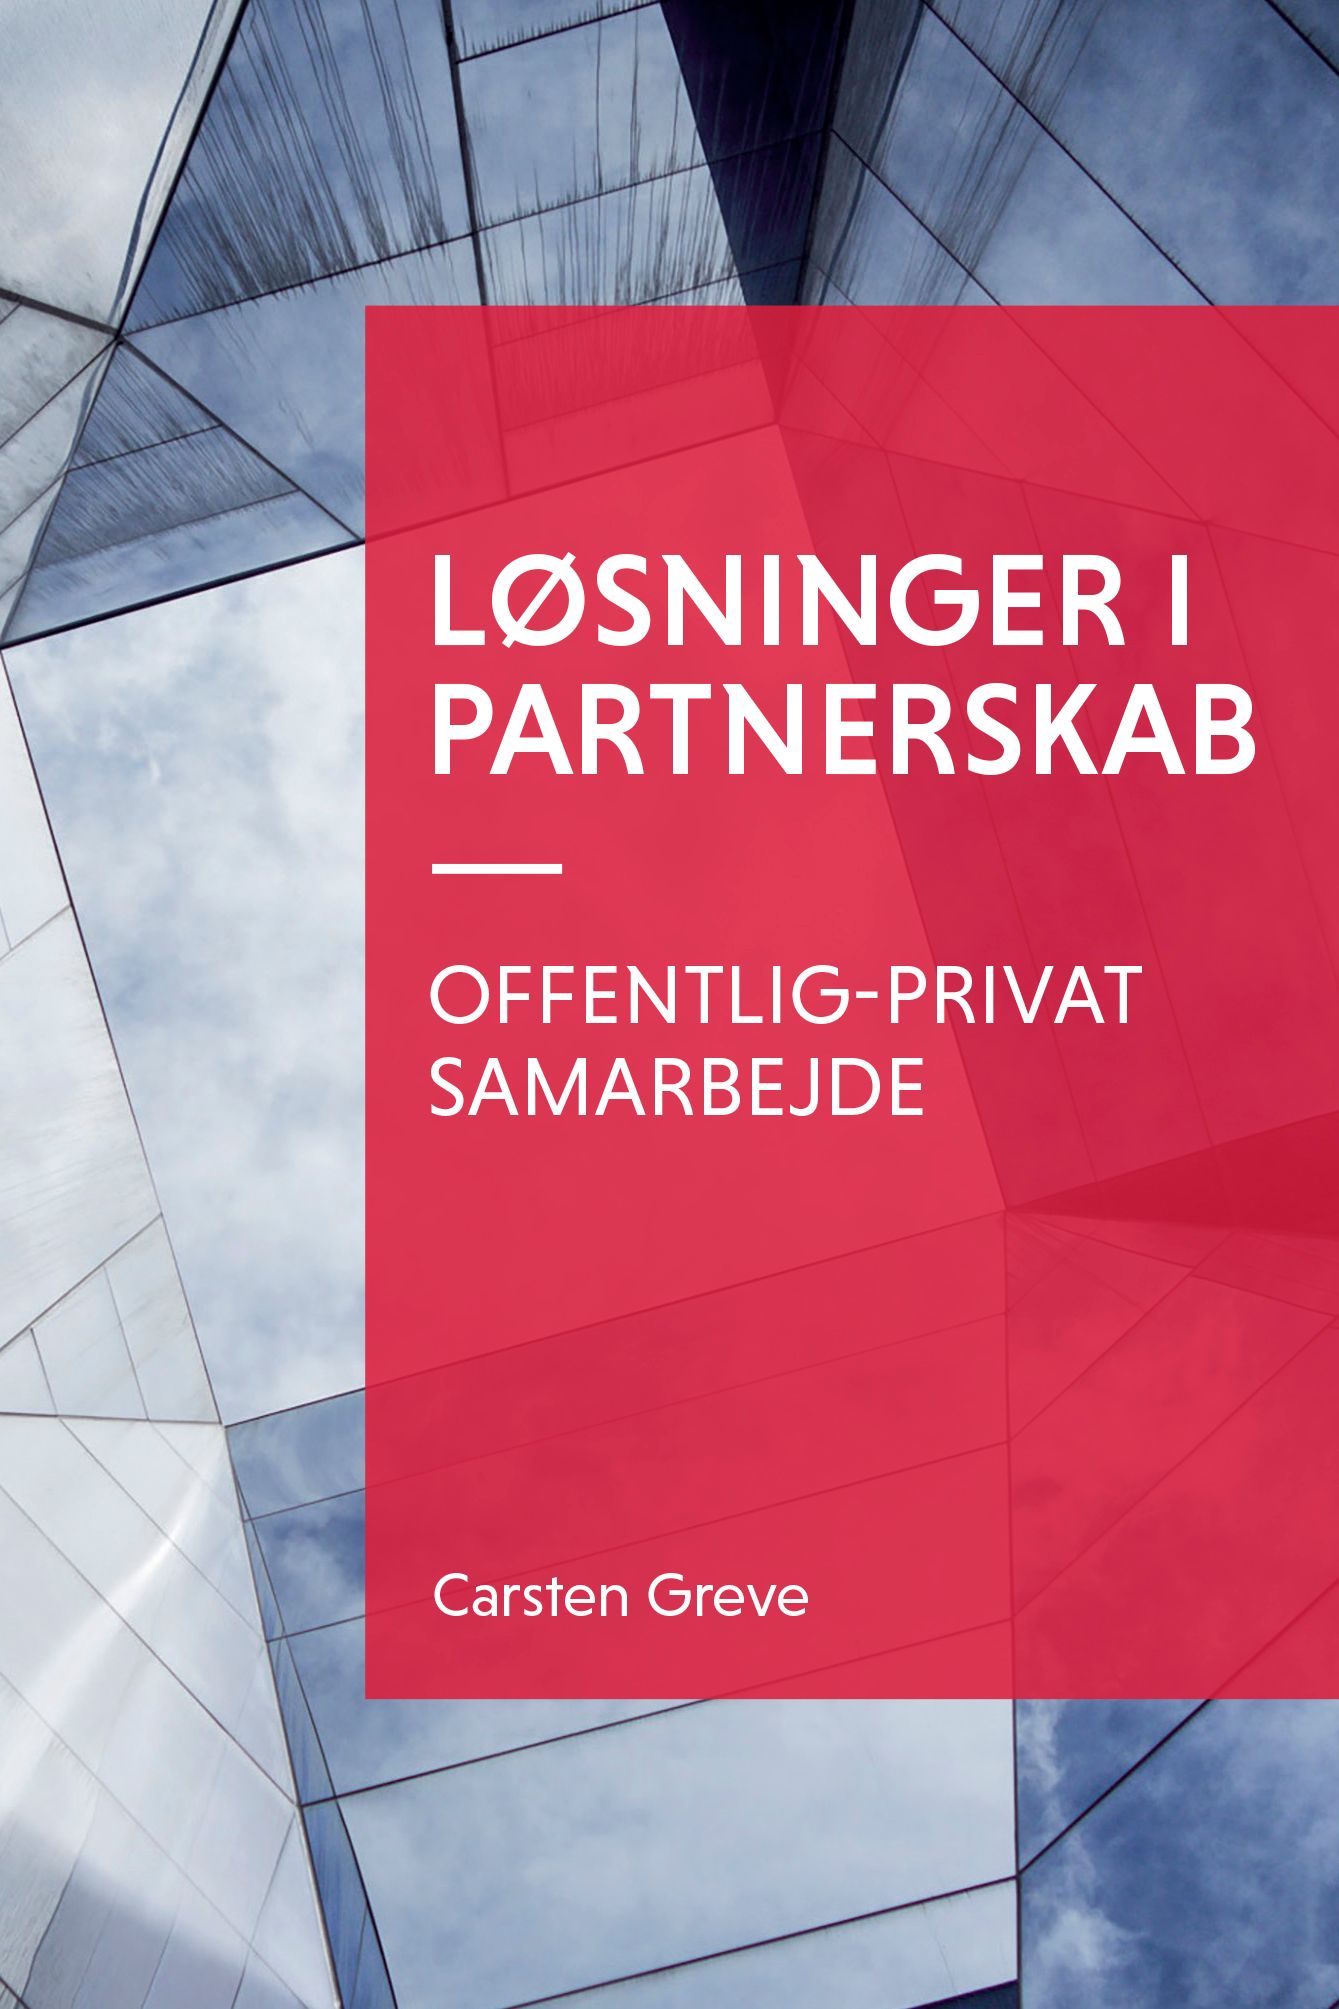 Løsninger i partnerskab, e-bog af Carsten Greve